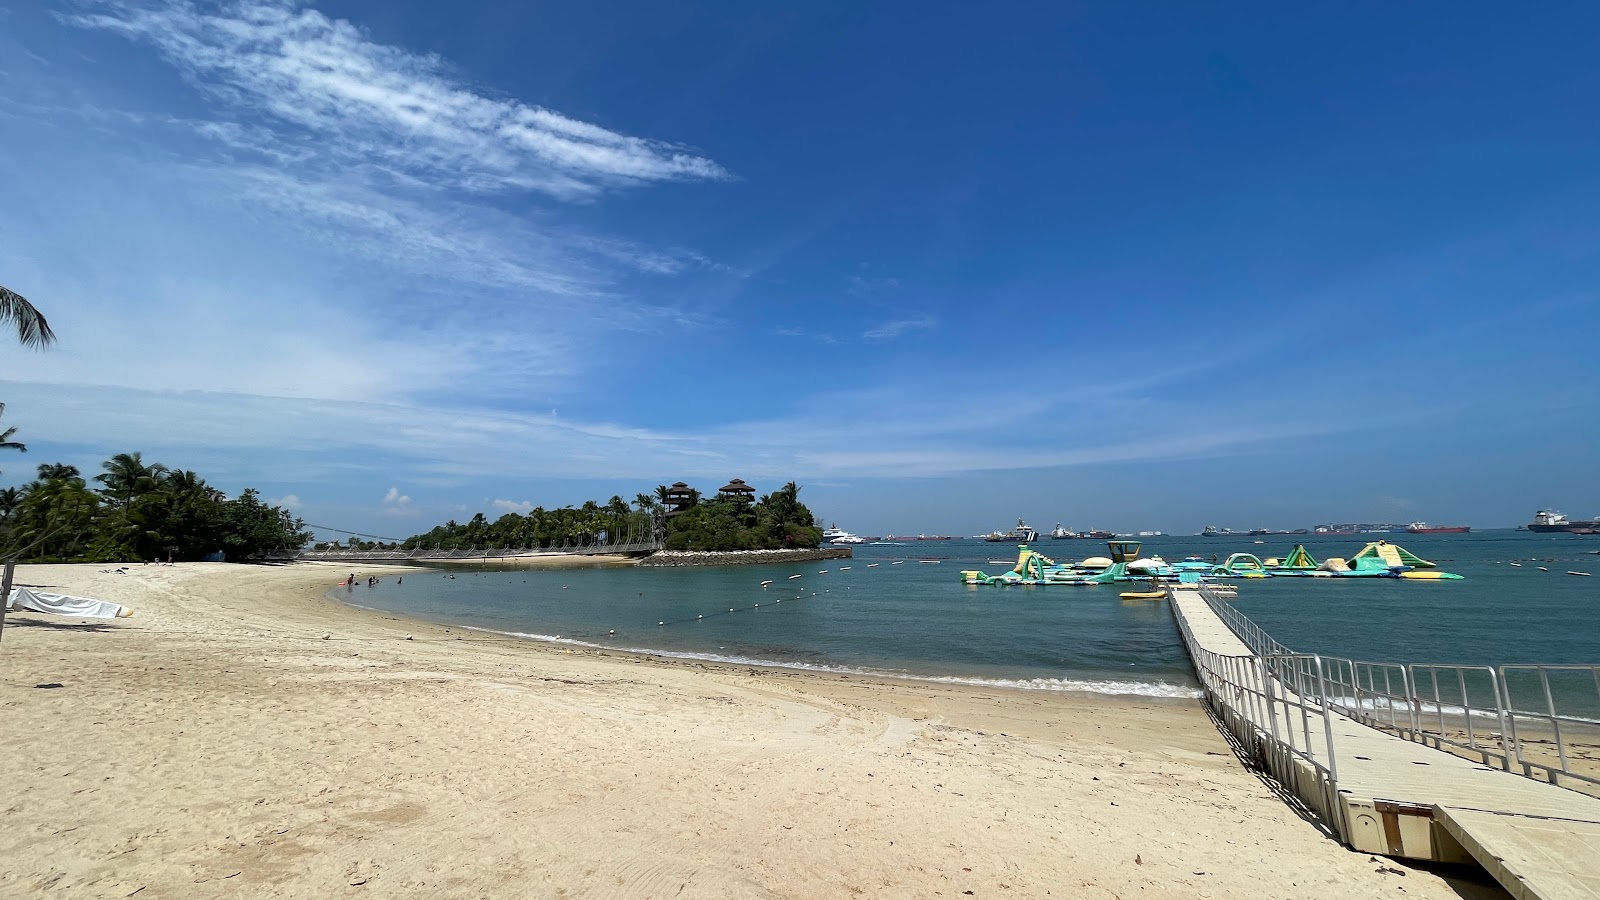 Zdjęcie Palawan Beach z przestronna plaża